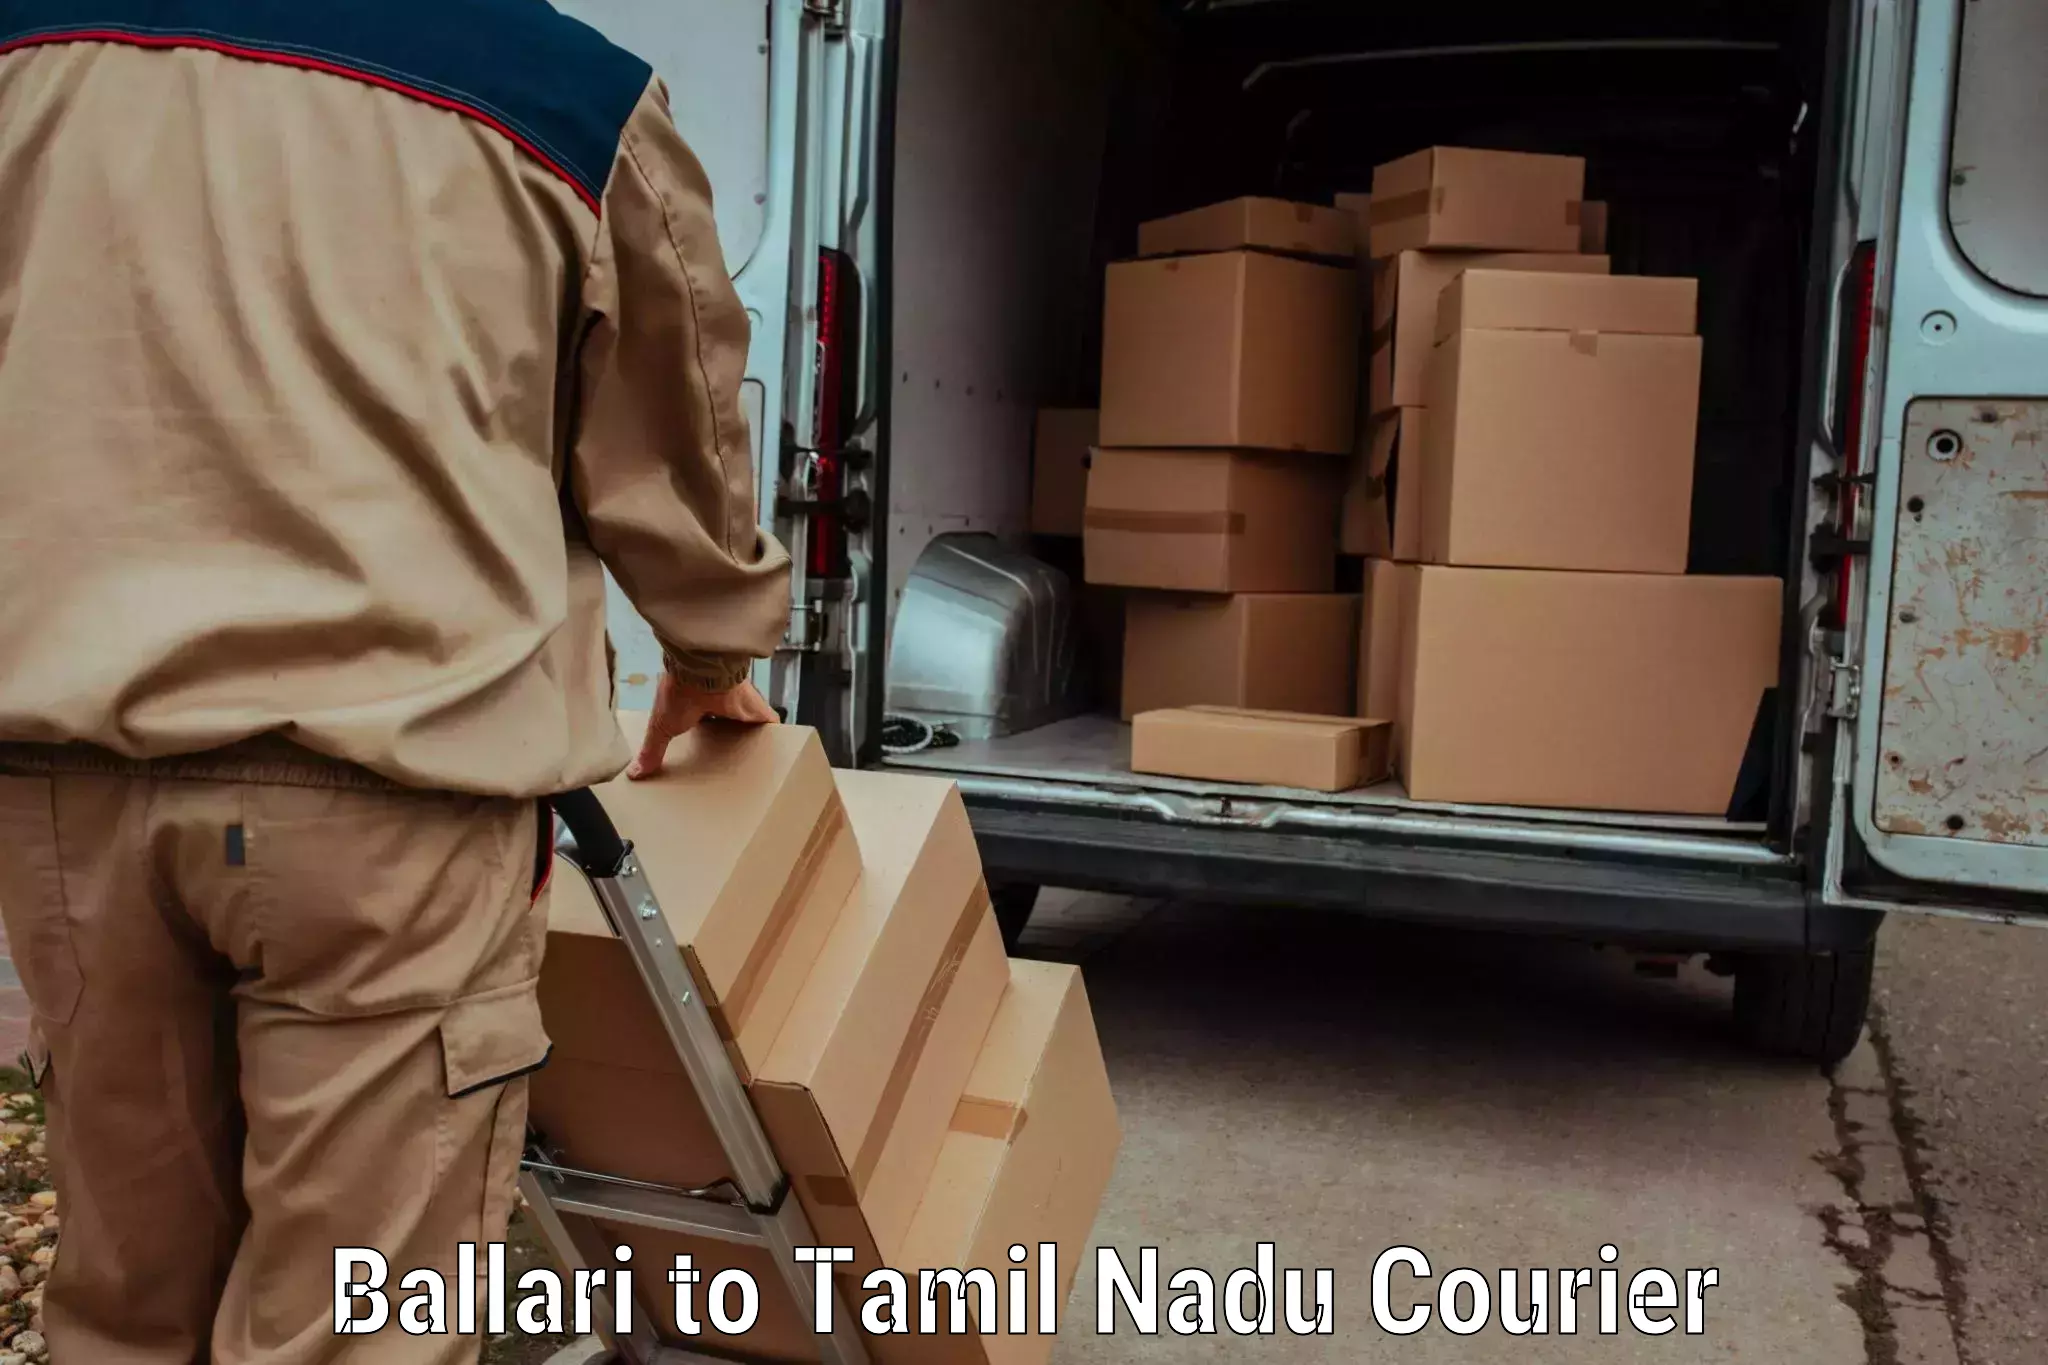 User-friendly courier app Ballari to Peravurani